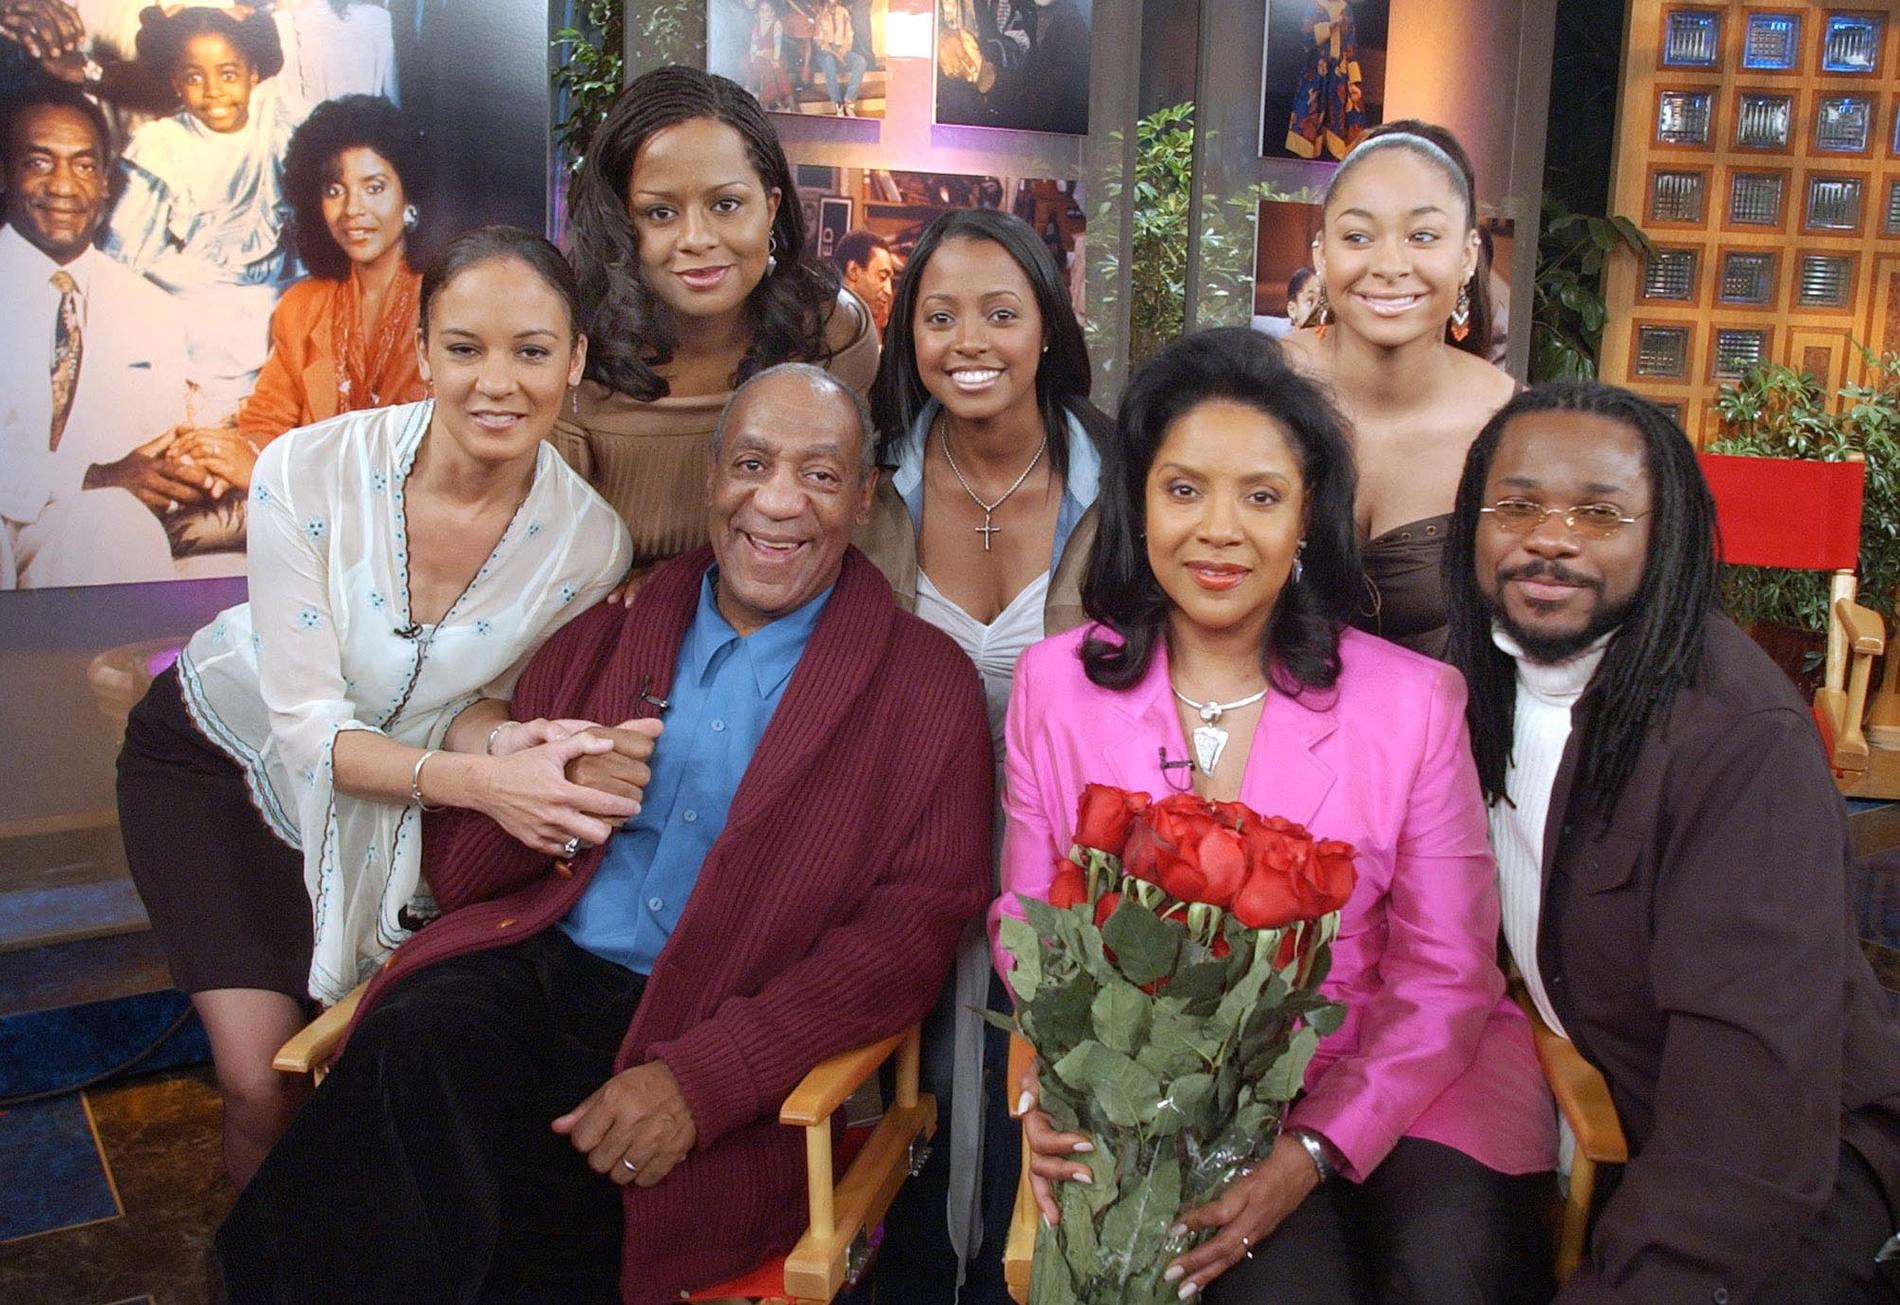 Tv-familjen från ”The Cosby show” återförenade. Men i dag verkar alla inte lika övertygade om Bill Cosbys oskuld.